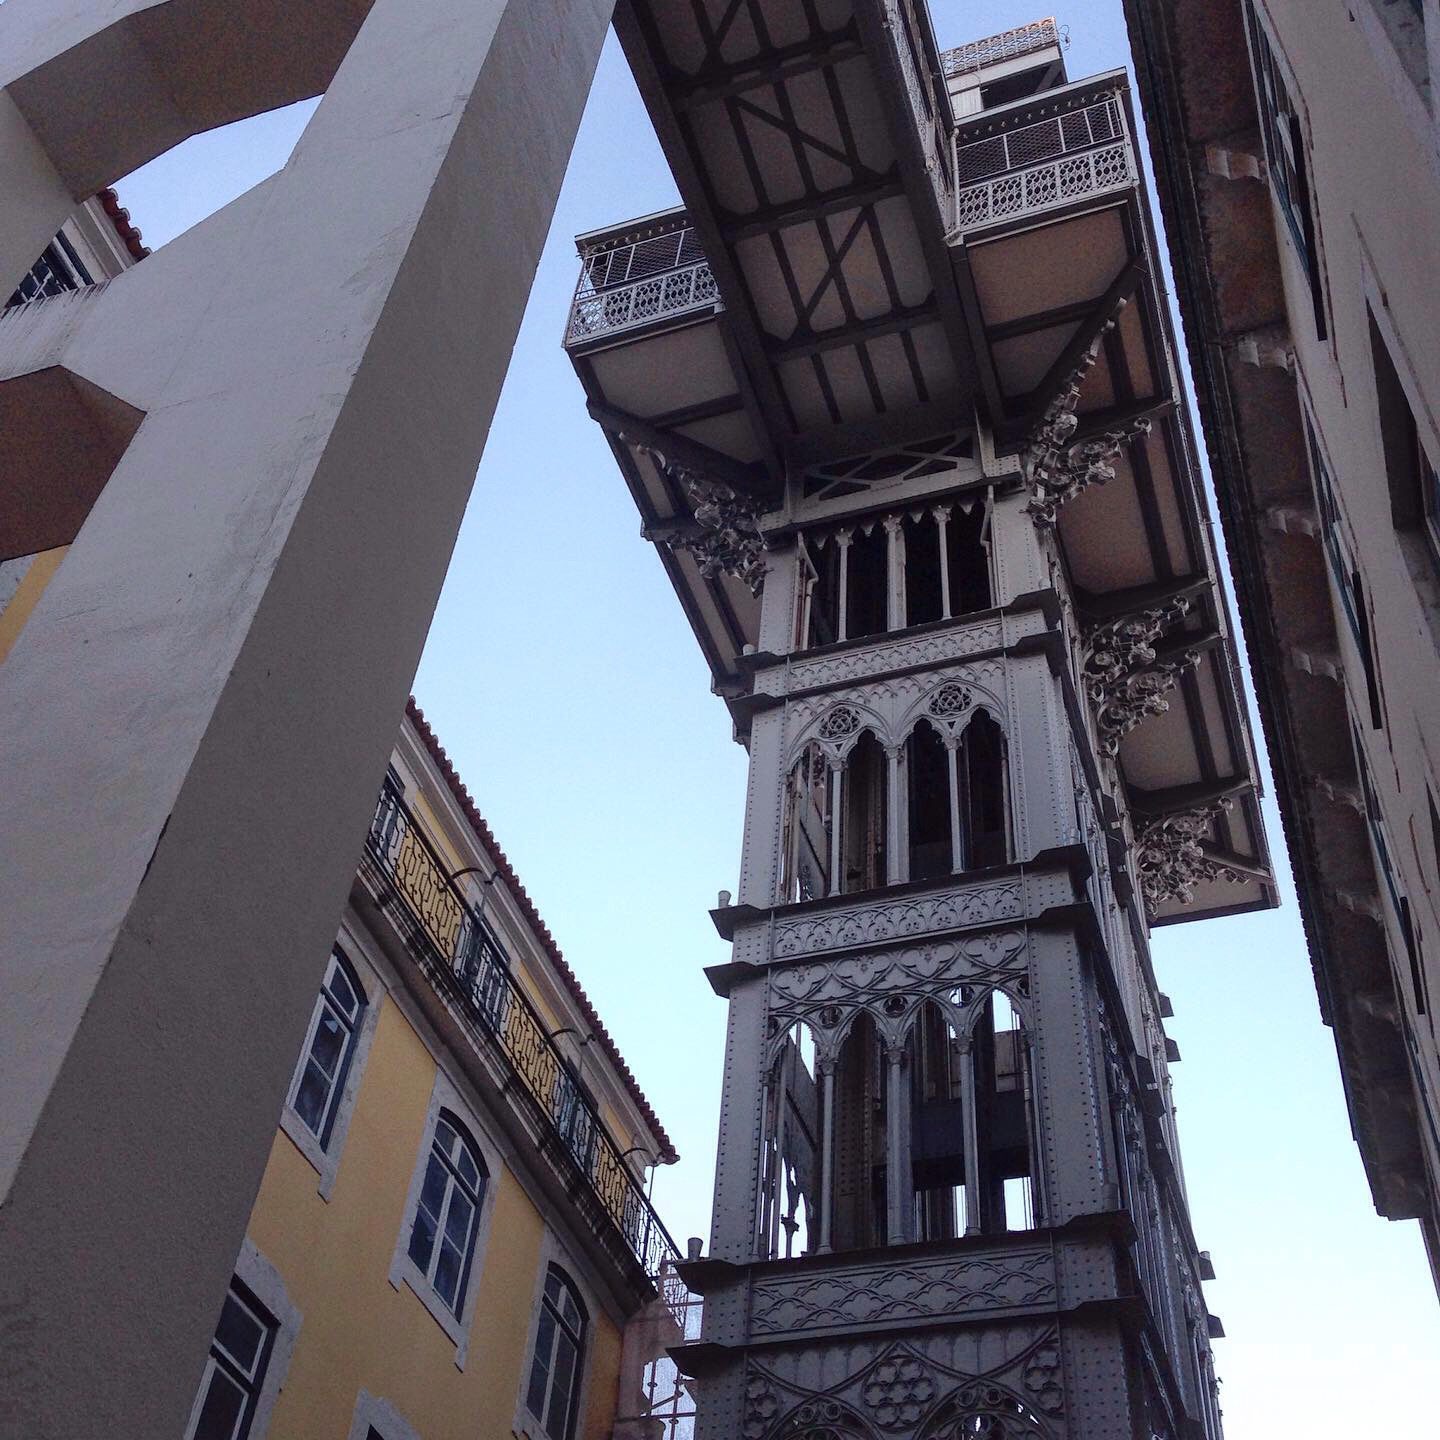 Wahrlich überragend! An Design, Konstruktion und Höhe: Der Elevador de Santa Justa in Lissabons Geschäftsviertel Baixa.